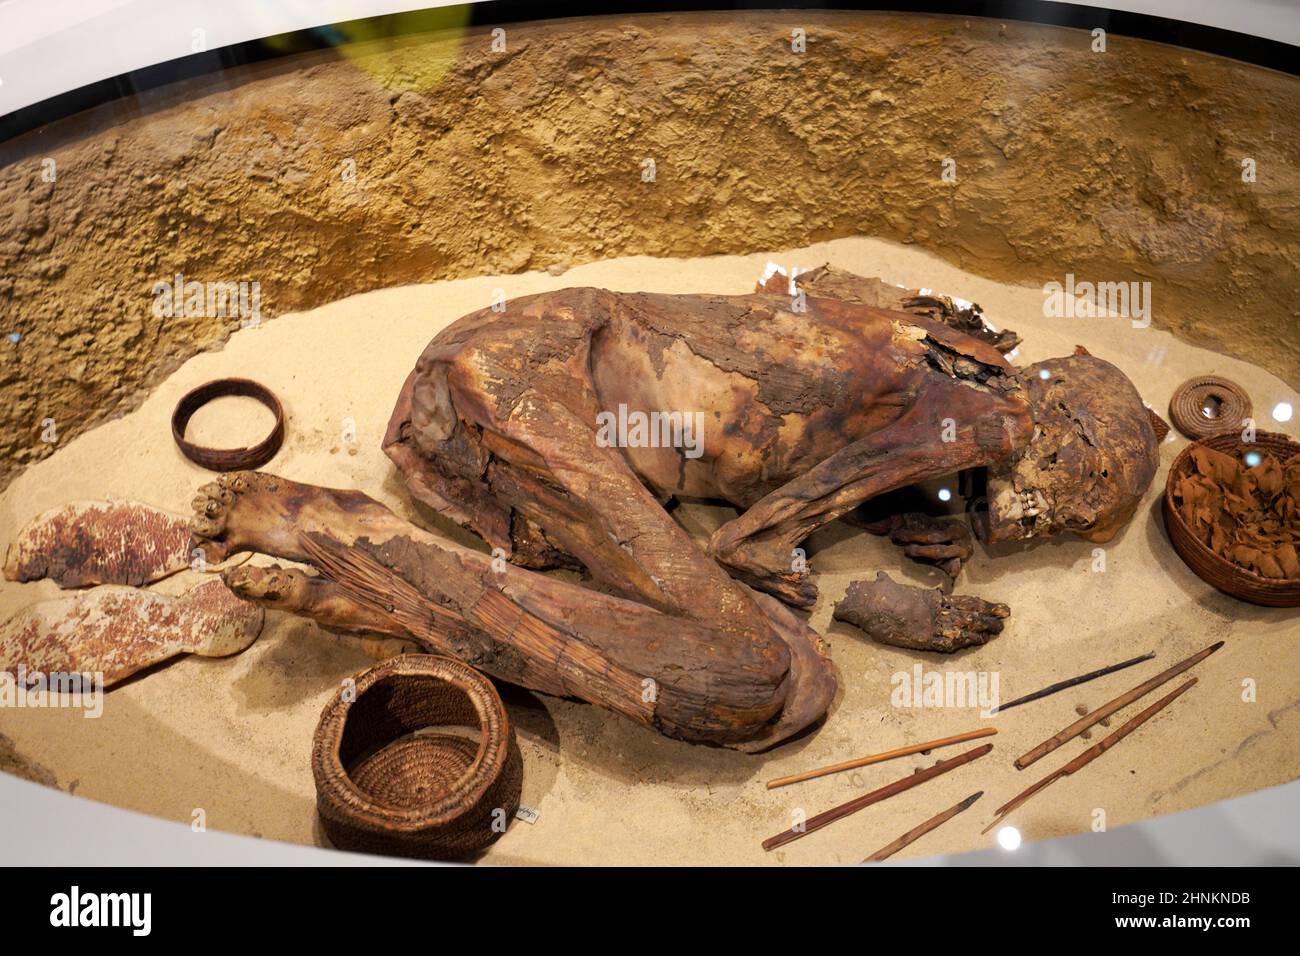 TORINO, ITALIA - 19 AGOSTO 2021: Mamma in posizione fetale. Mummificazione di un corpo durante la civiltà egizia, Museo Egizio di Torino, Italia Foto Stock